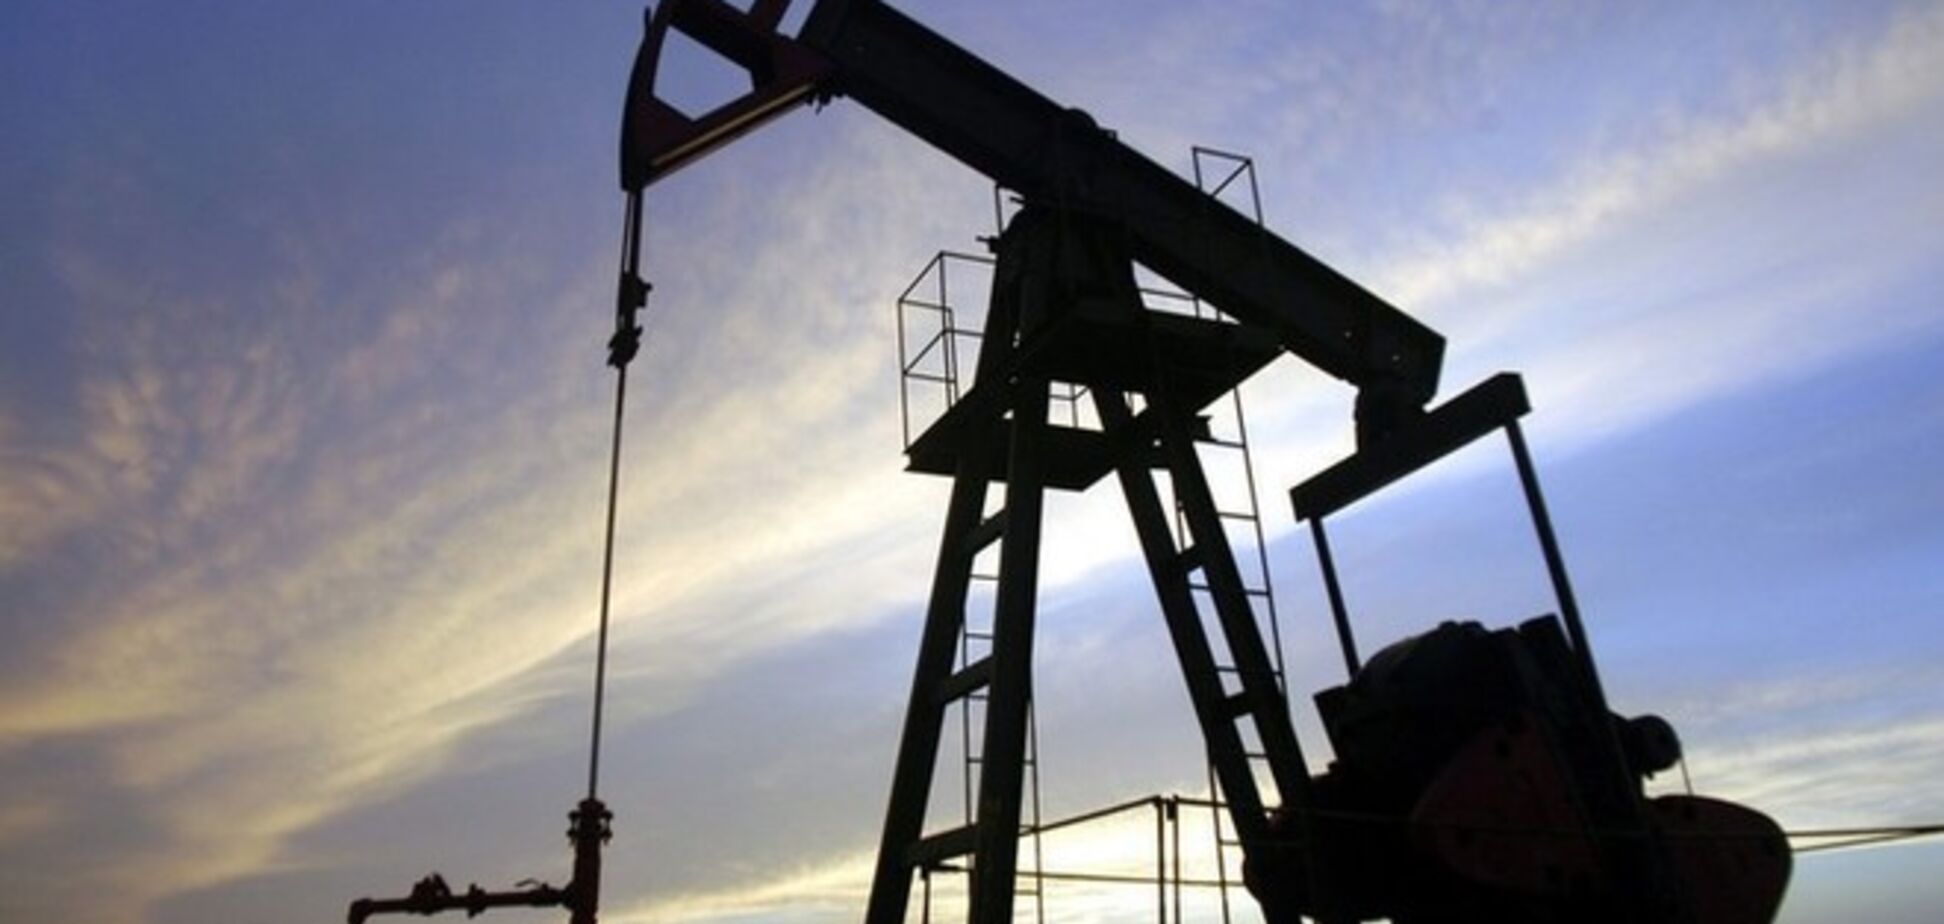 Цена на нефть марки Brent упала до нового минимума - $85,04 за баррель